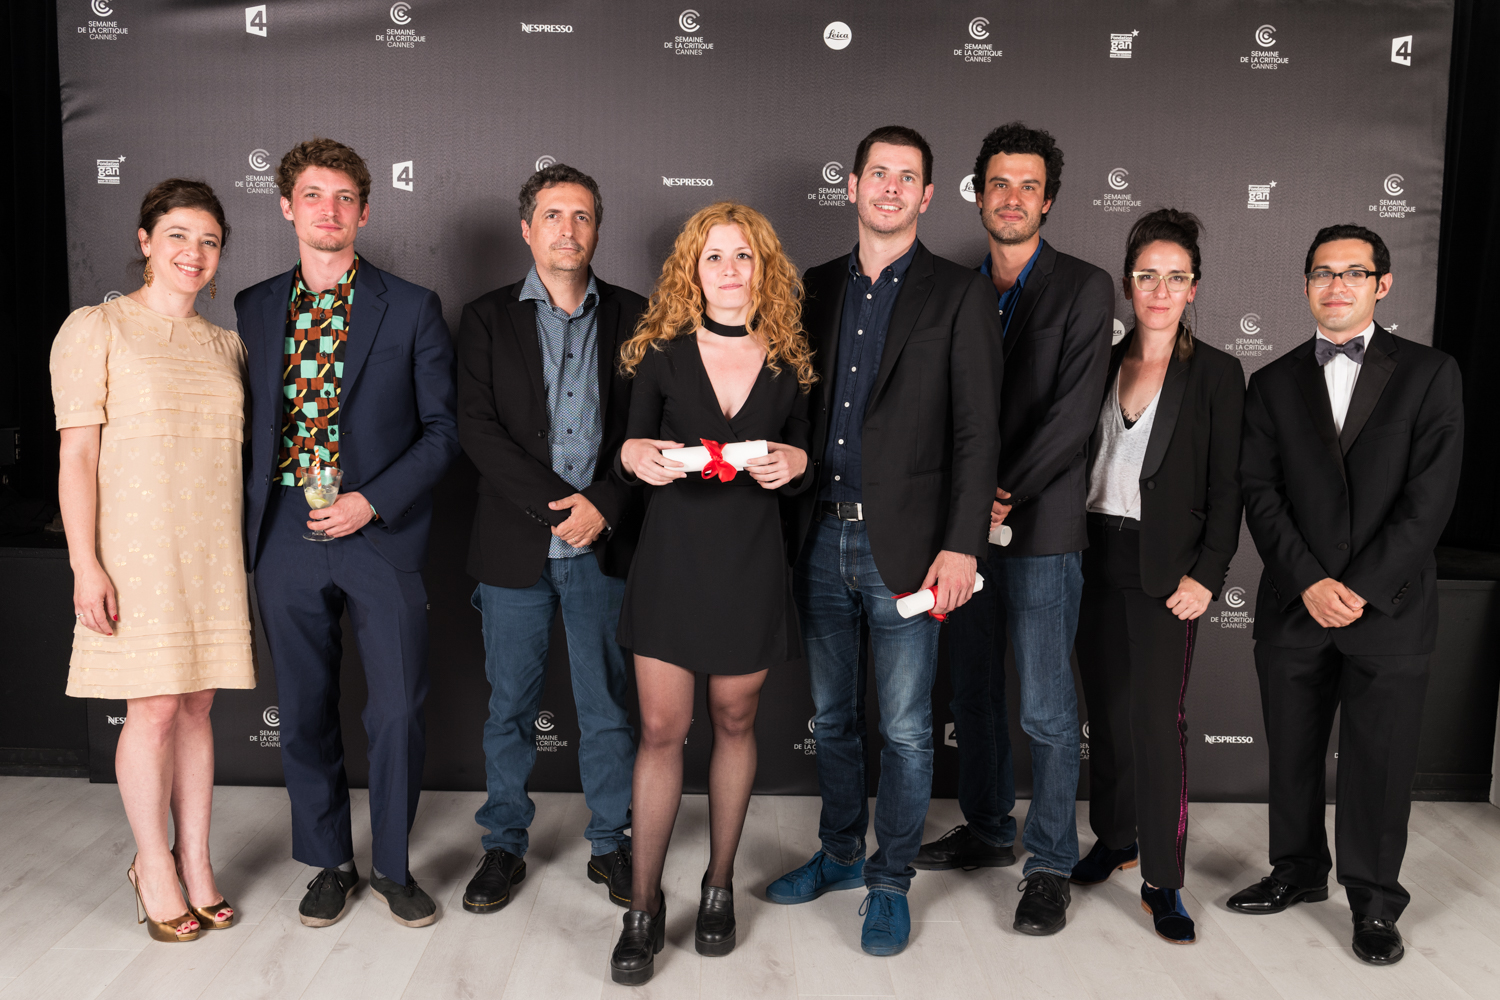 2017 Winners of La Semaine de la Critique Prizes